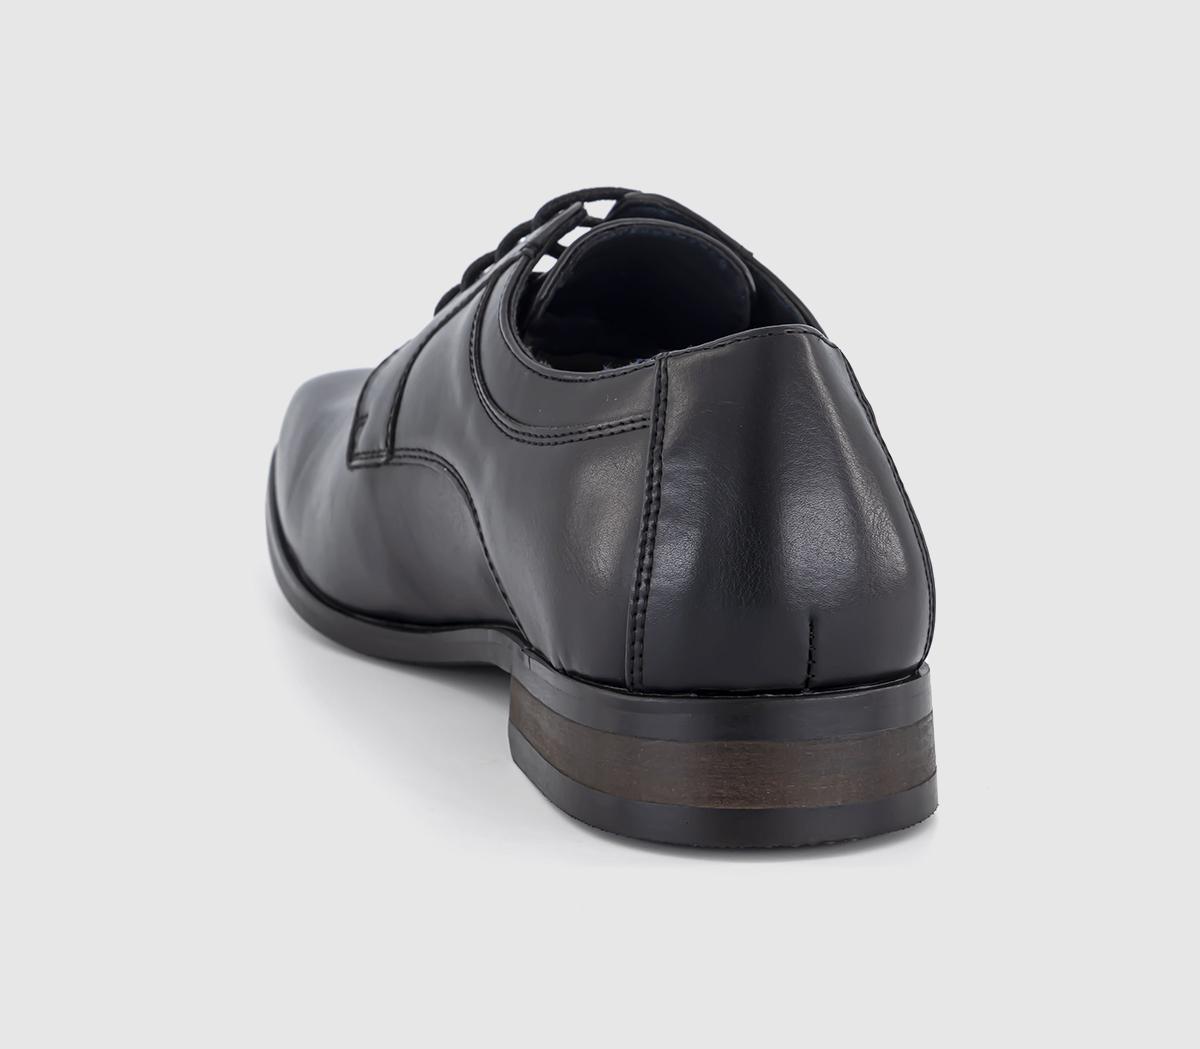 OFFICE Modena Plain Toe Derby Shoes Black - Men’s Smart Shoes